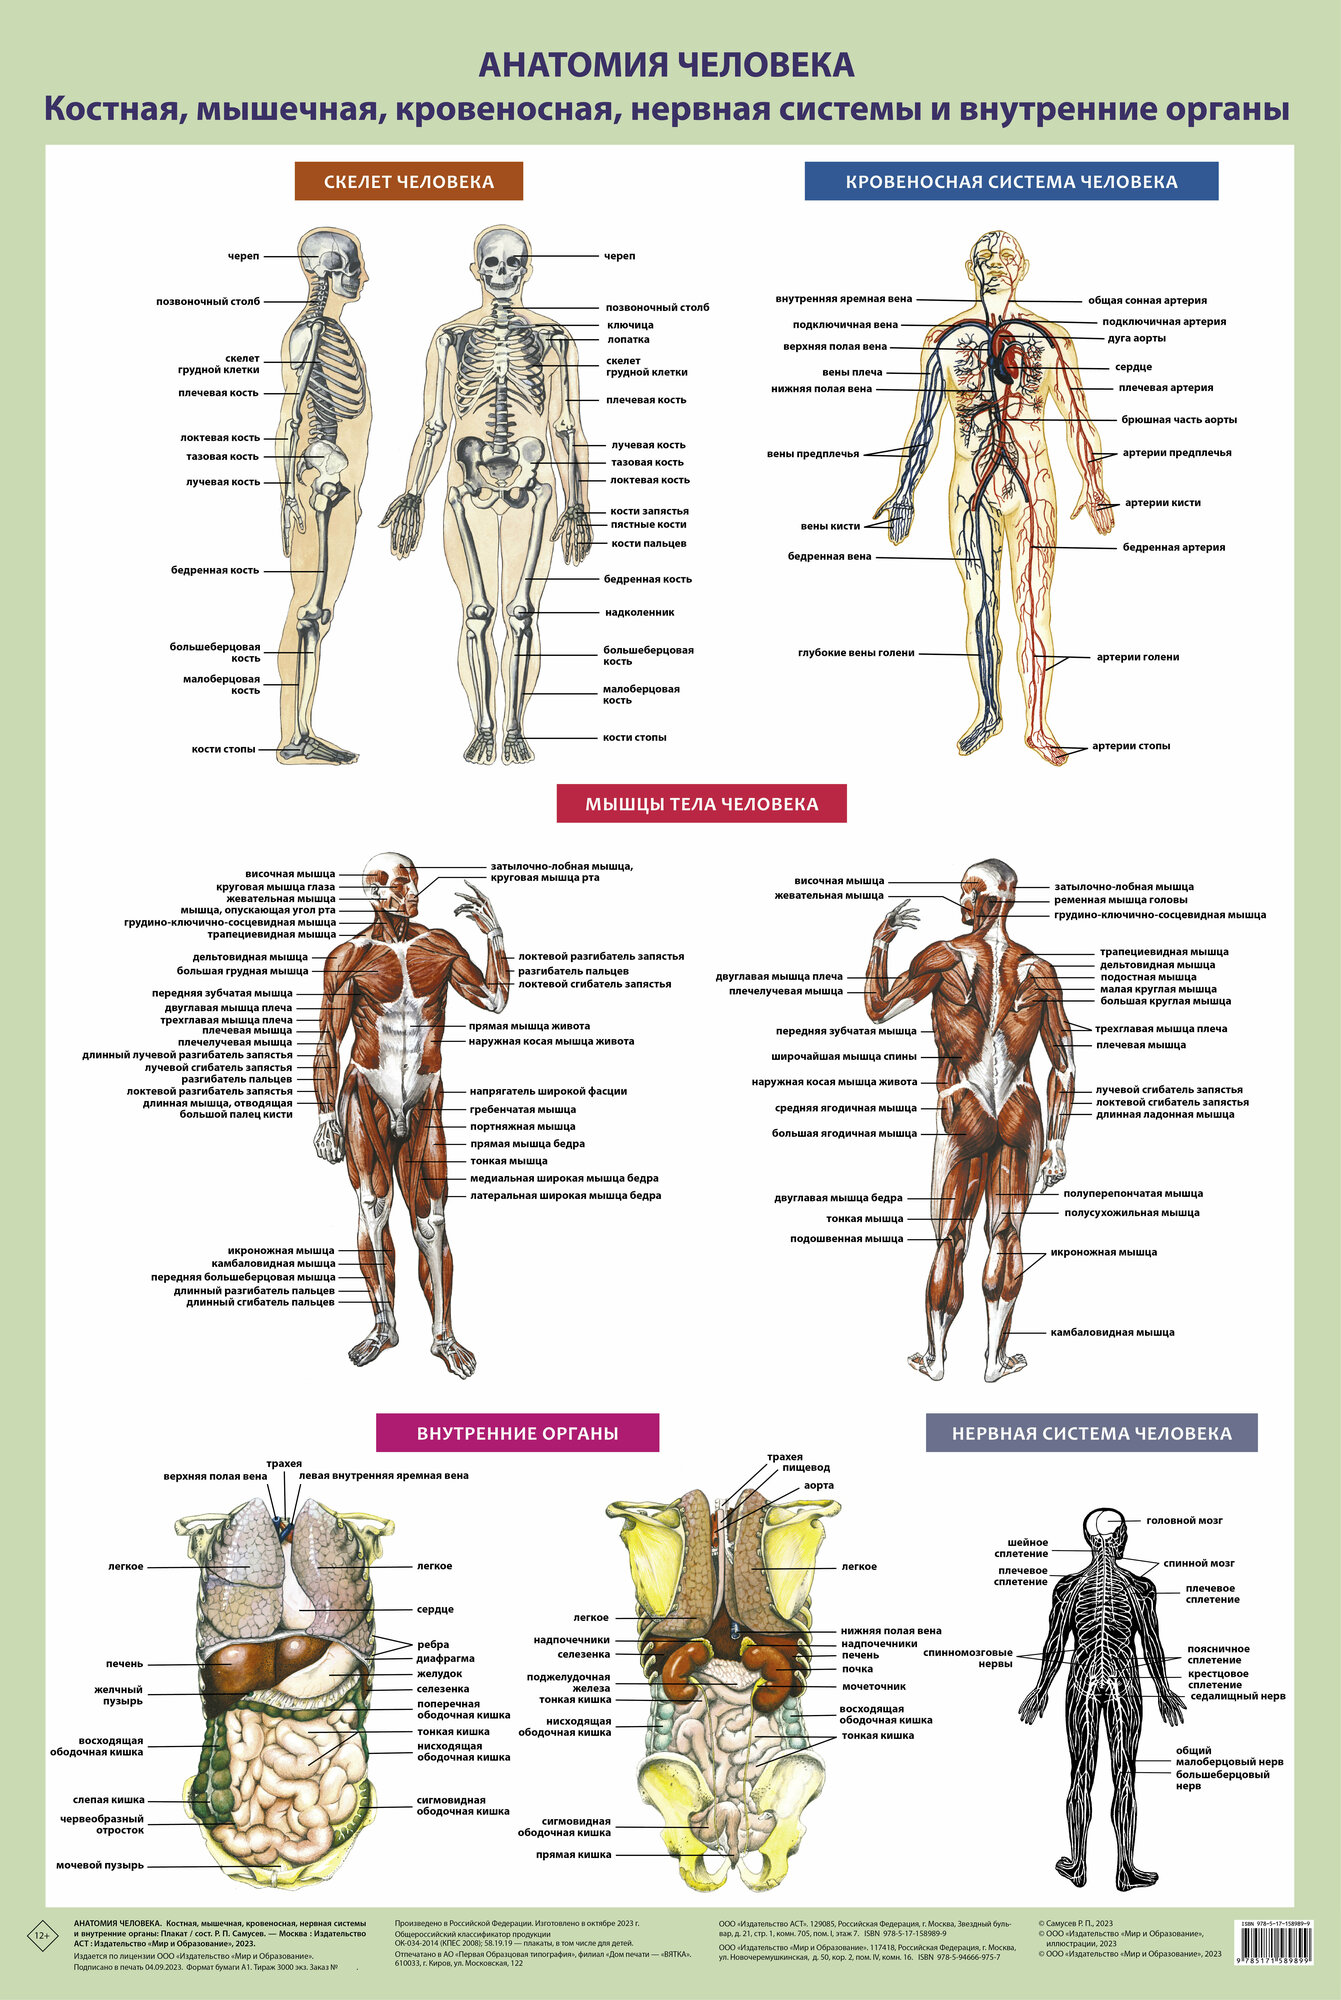 Анатомия человека. Костная, мышечная, кровеносная системы и внутренние органы (в тубусе)Самусев Р. П.